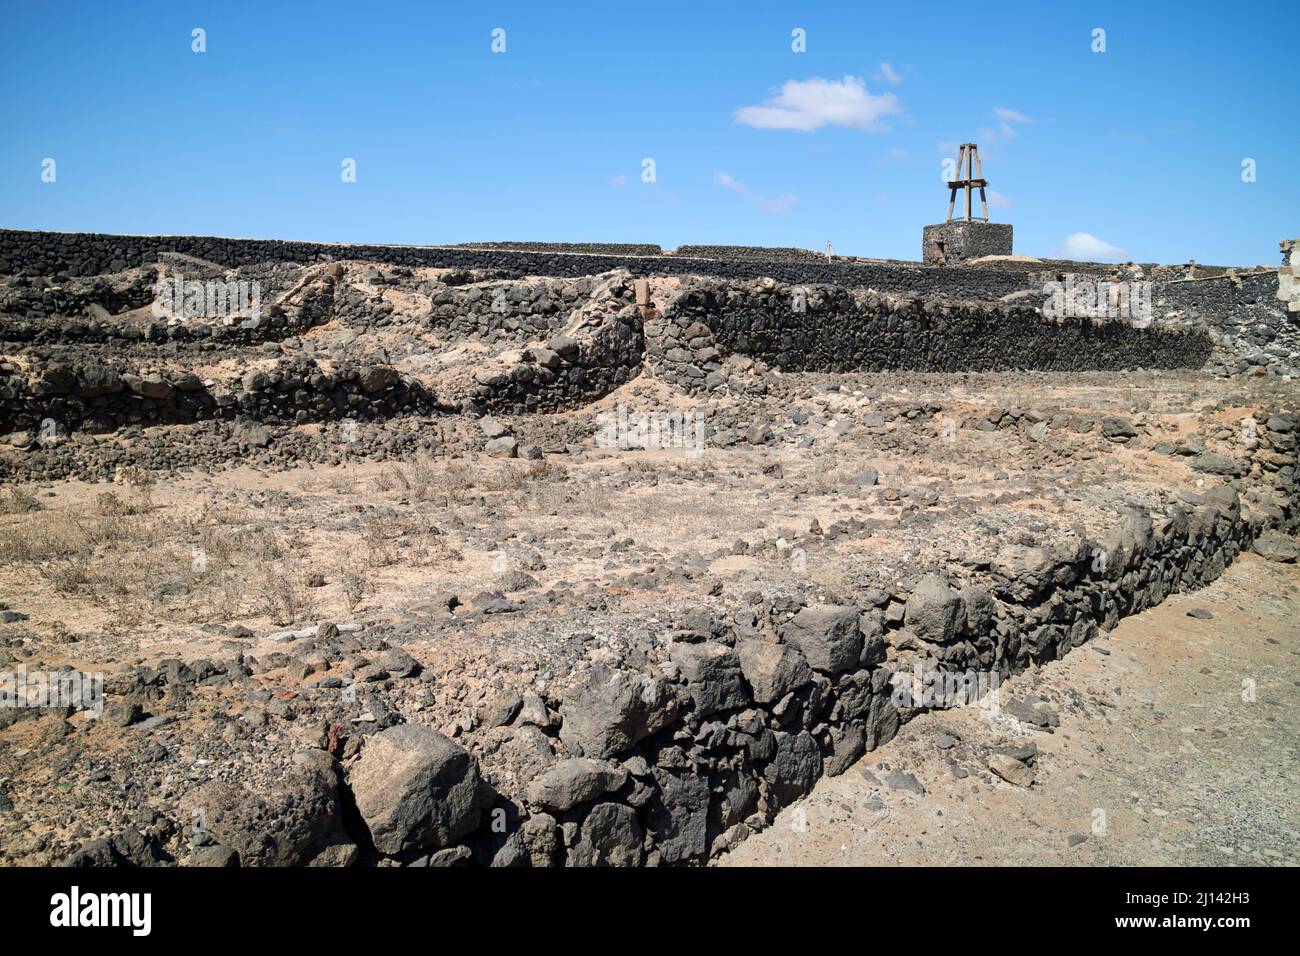 roche de lave noire murs de pierre champ diviser arrecife lanzarote îles canaries espagne Banque D'Images